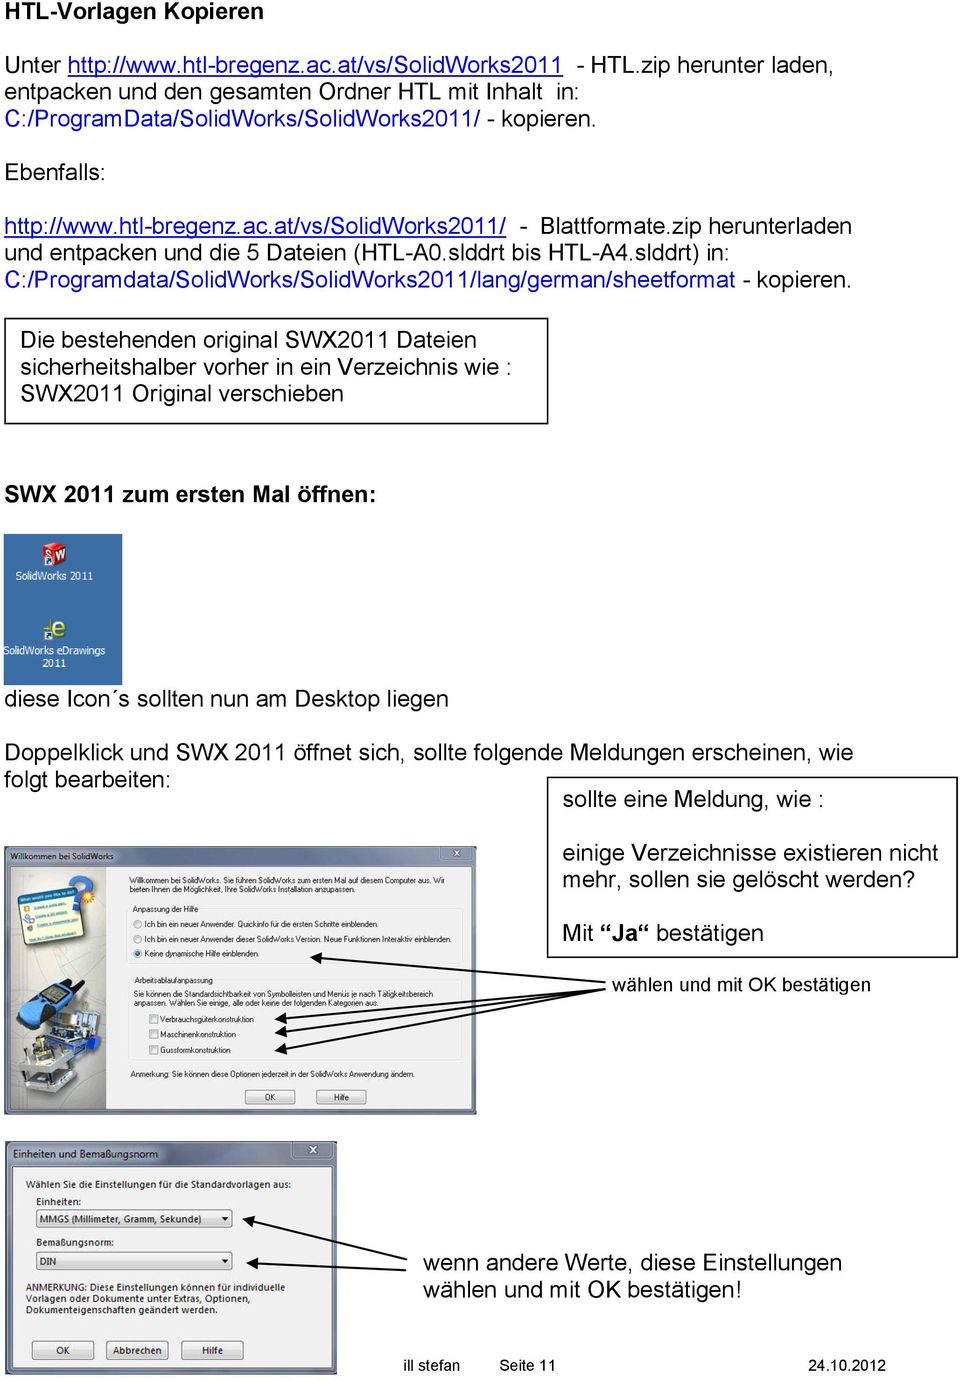 zip herunterladen und entpacken und die 5 Dateien (HTL-A0.slddrt bis HTL-A4.slddrt) in: C:/Programdata/SolidWorks/SolidWorks2011/lang/german/sheetformat - kopieren.